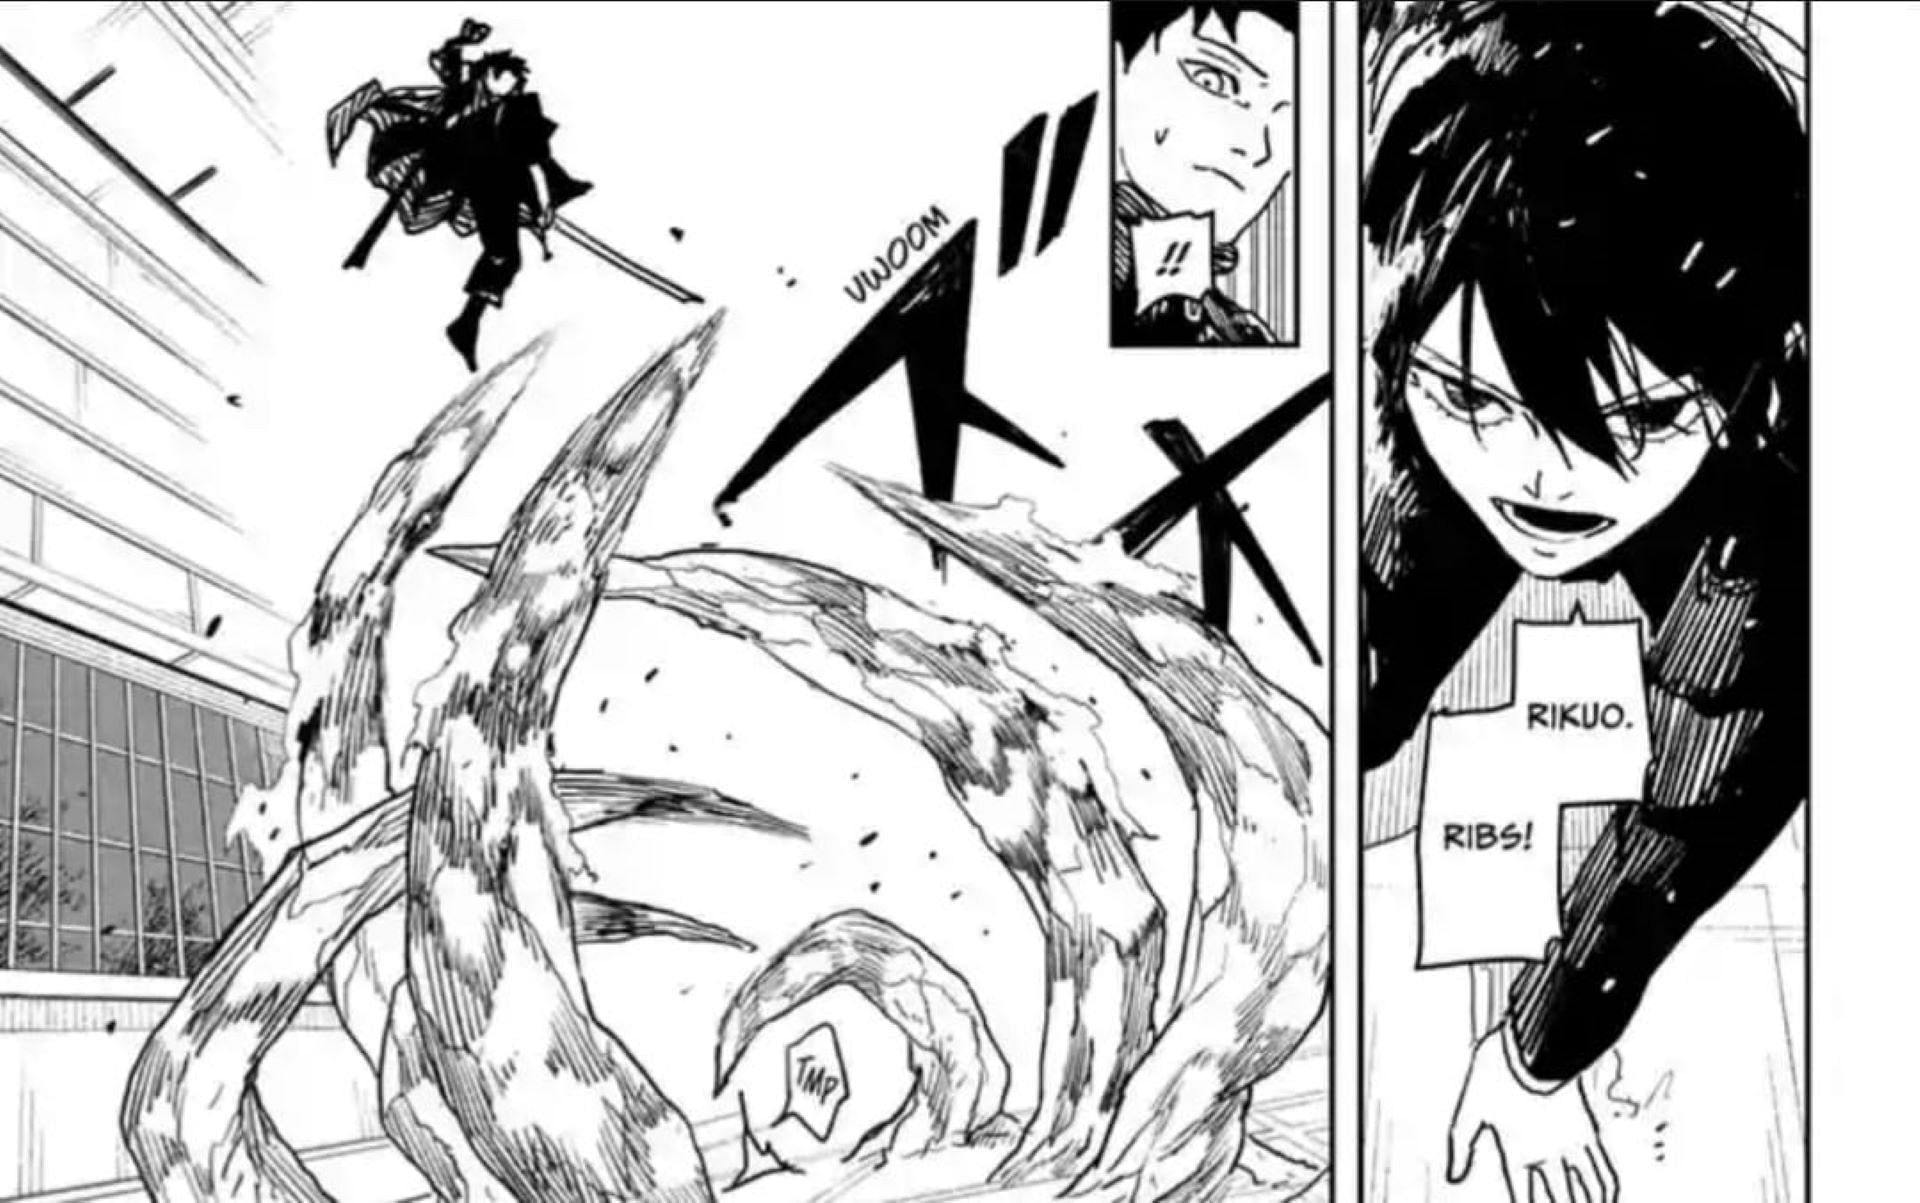 Chihiro vs Hiyuki, as seen in Kagurabachi chapter 20 (Image via Takeru Hokazono/Shueisha)